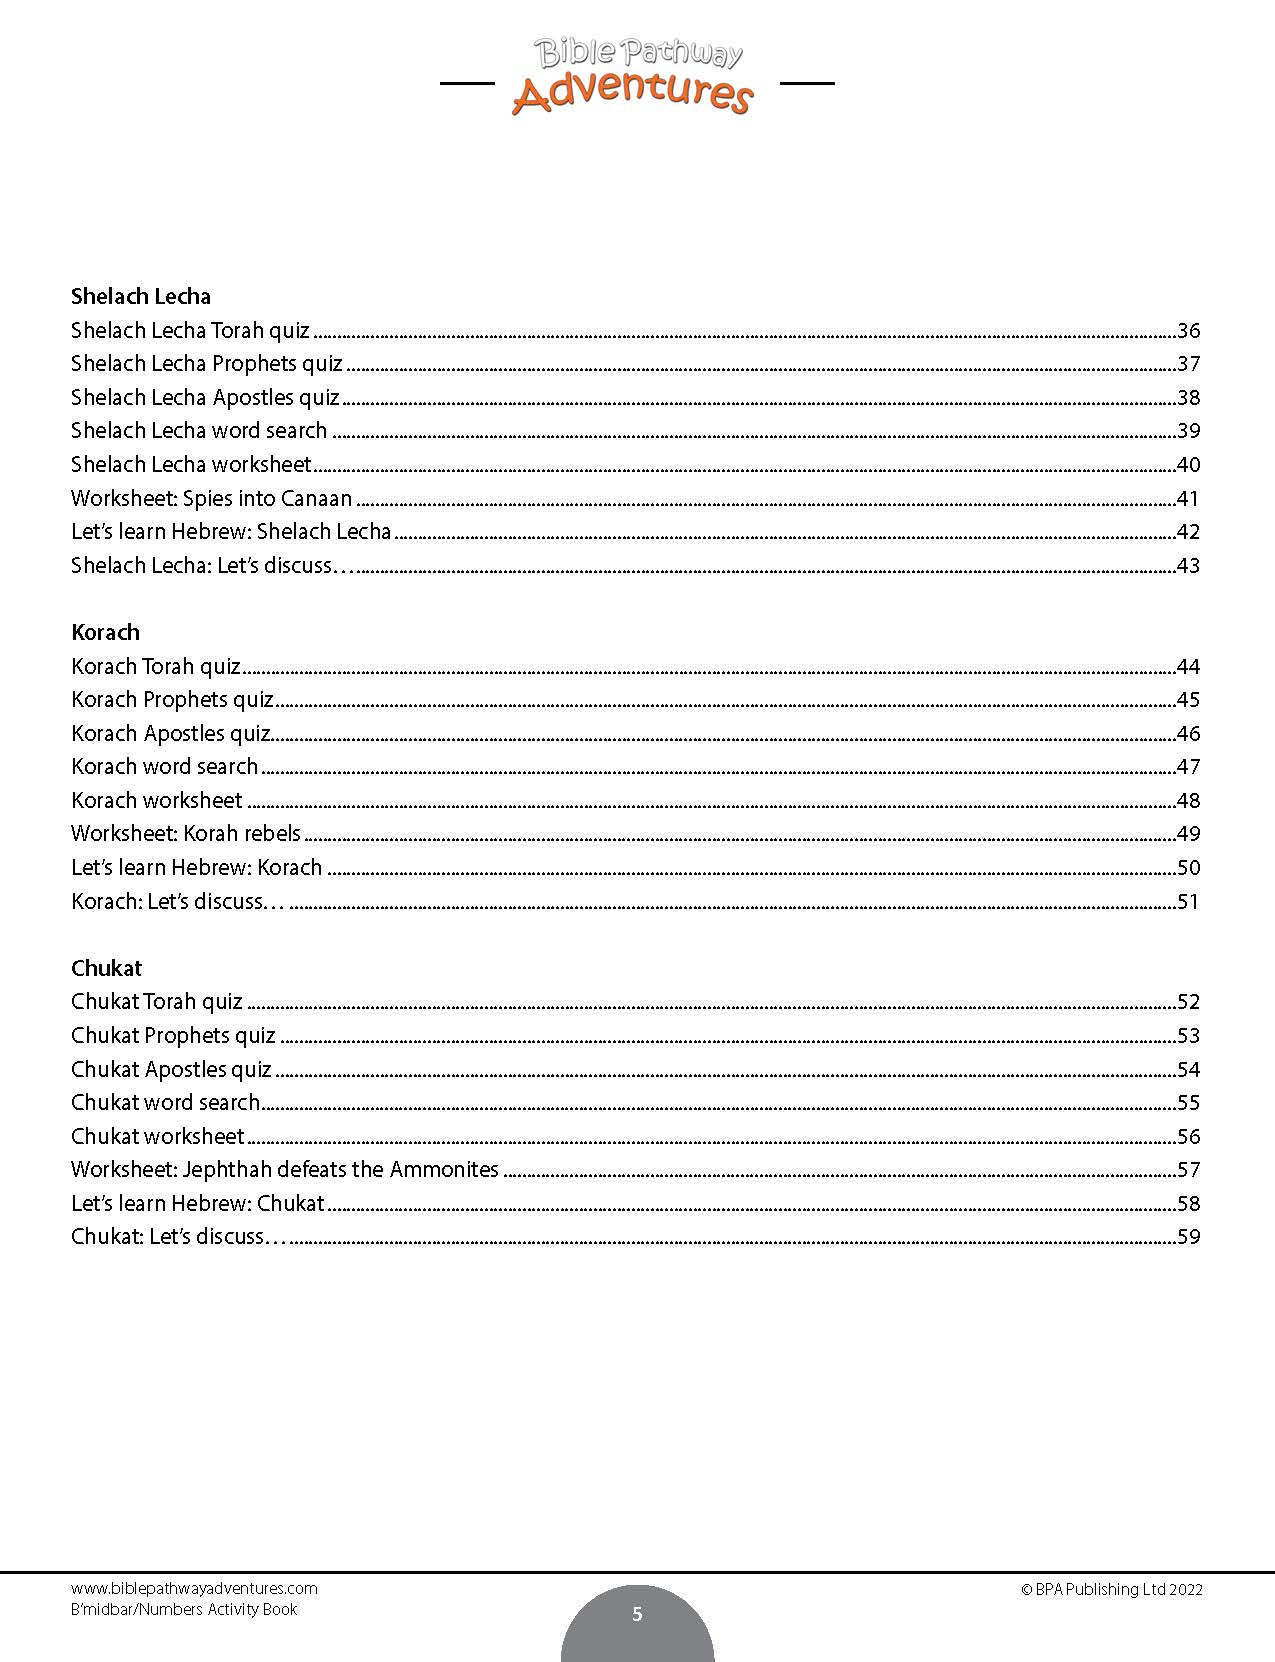 B'midbar | Libro de actividades de la porción de la Torá de los números